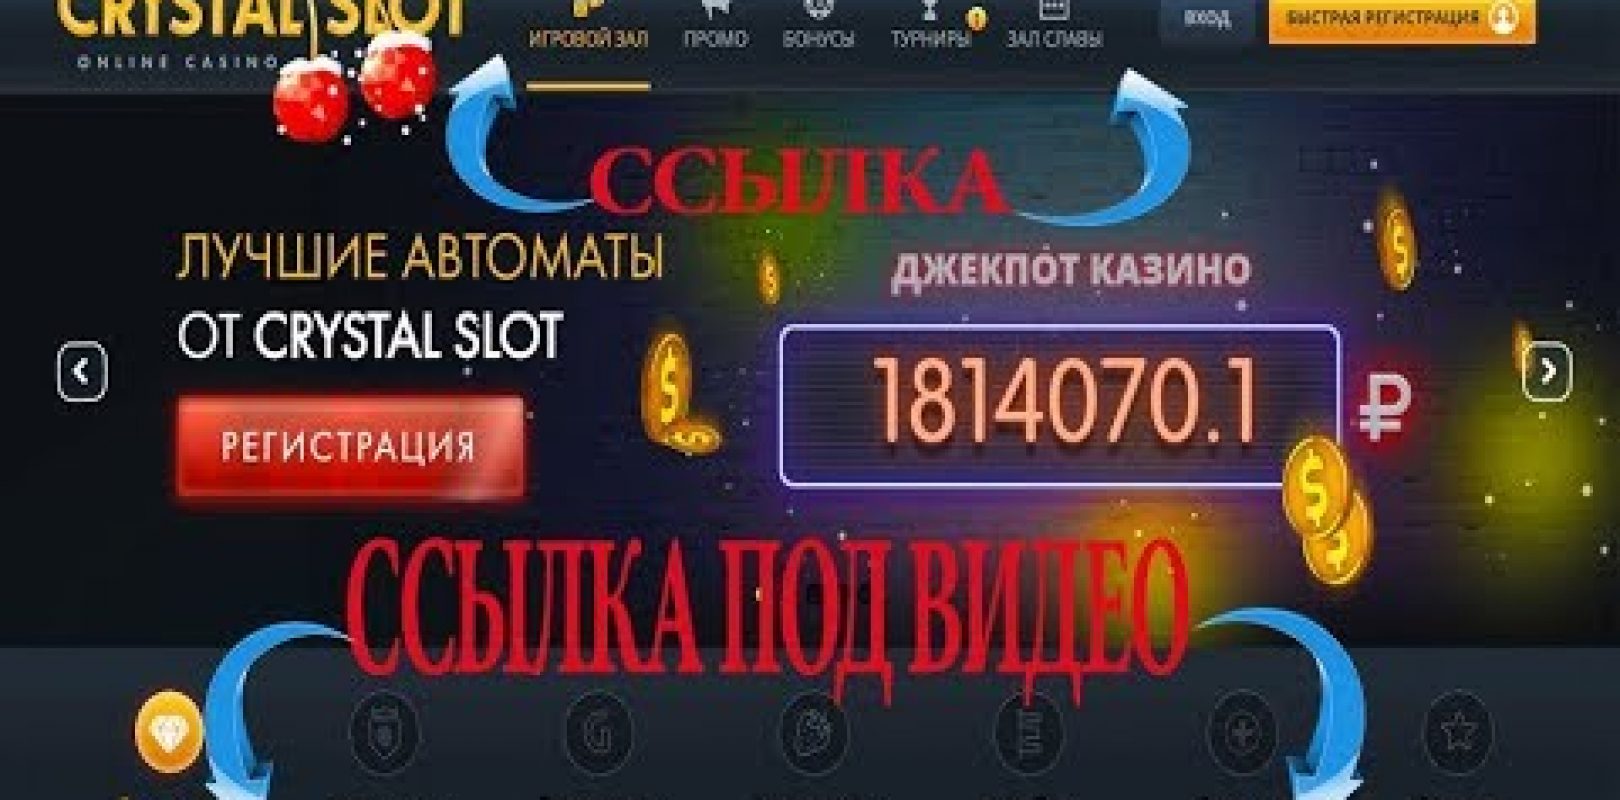 Is buzzluck casino legit